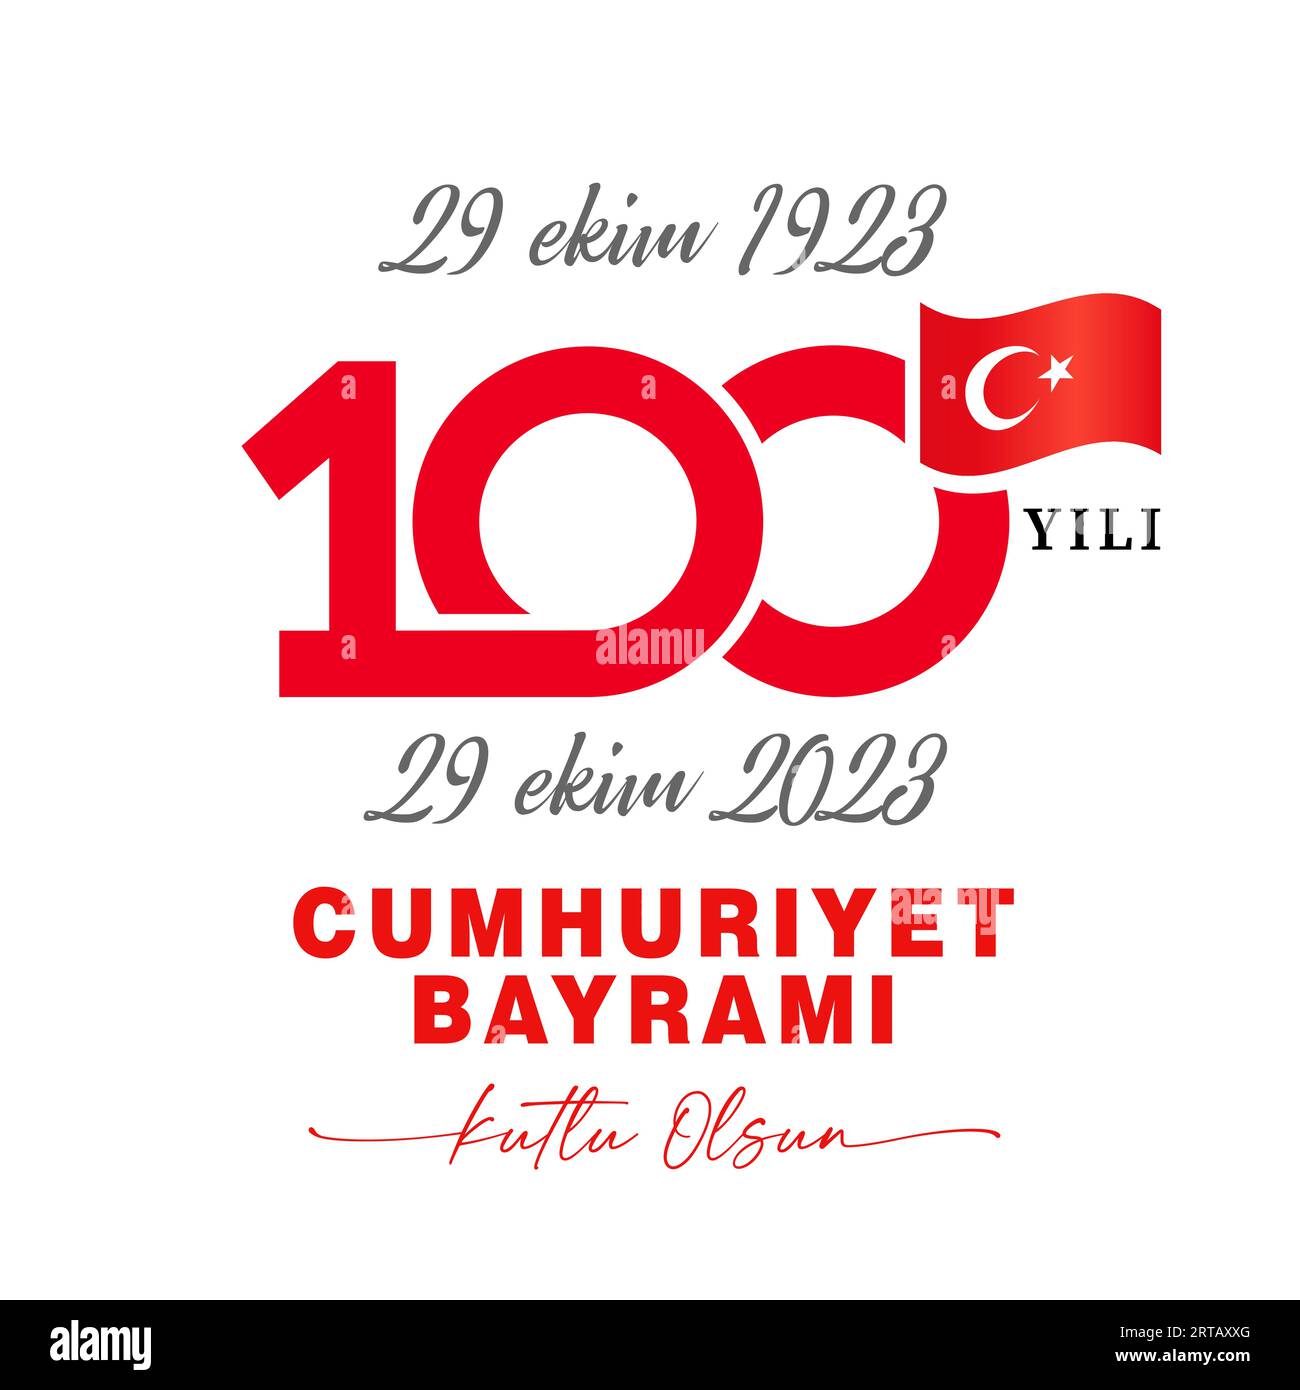 29 Ekim 1923-2023 CUMHURIYET BAYRAMI 100 yili Kutlu olsun. Übersetzung aus türkisch - Oktober 29 1923-2023 Jahr, Tag der Republik, 100 Jahre Republik Stock Vektor